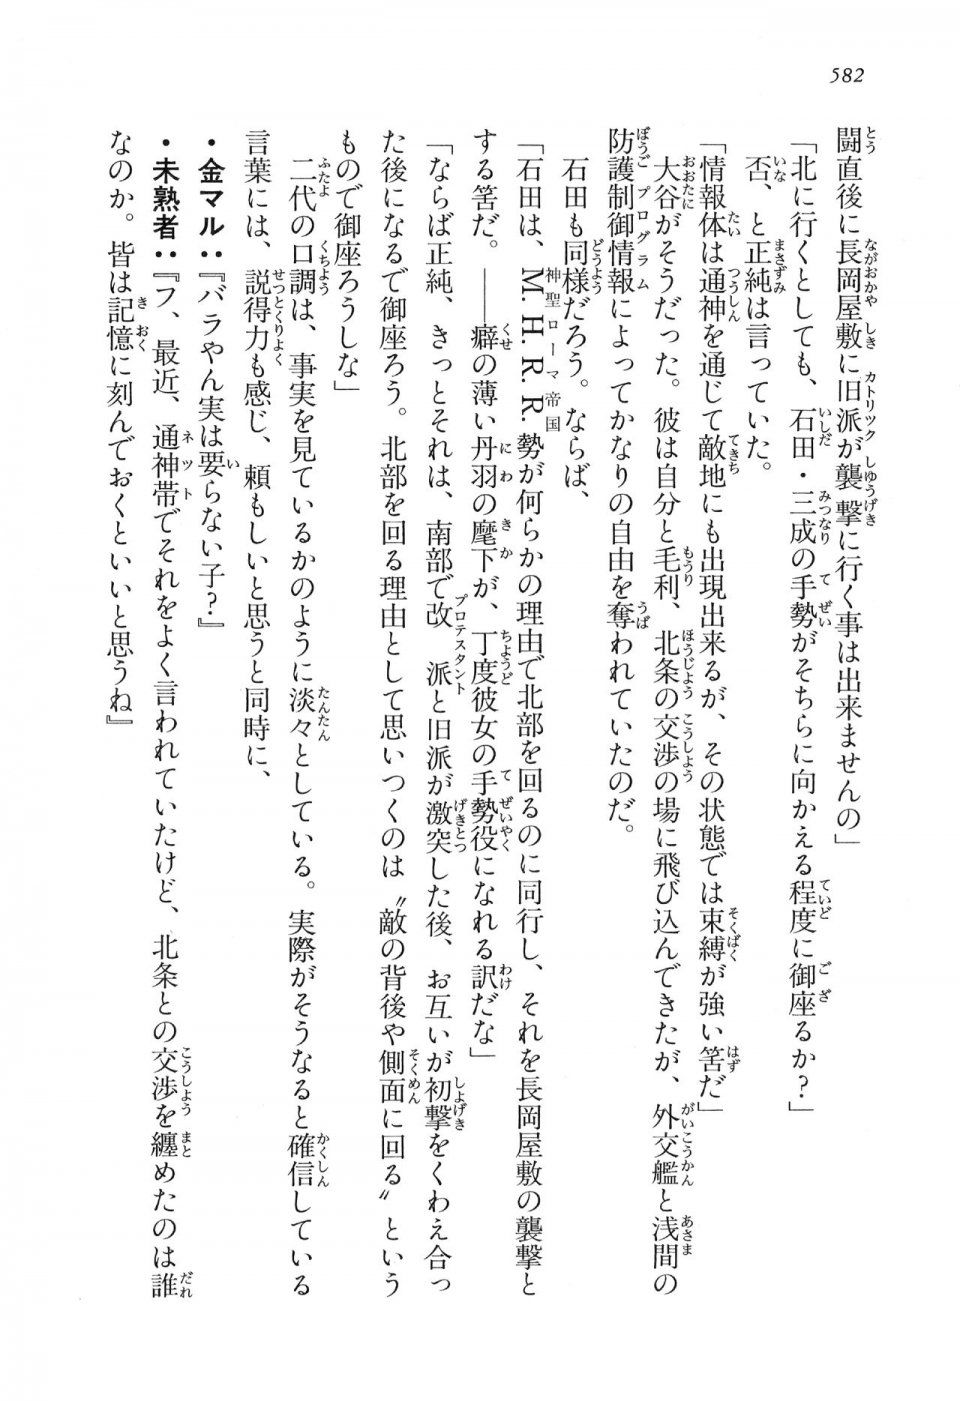 Kyoukai Senjou no Horizon LN Vol 16(7A) - Photo #582